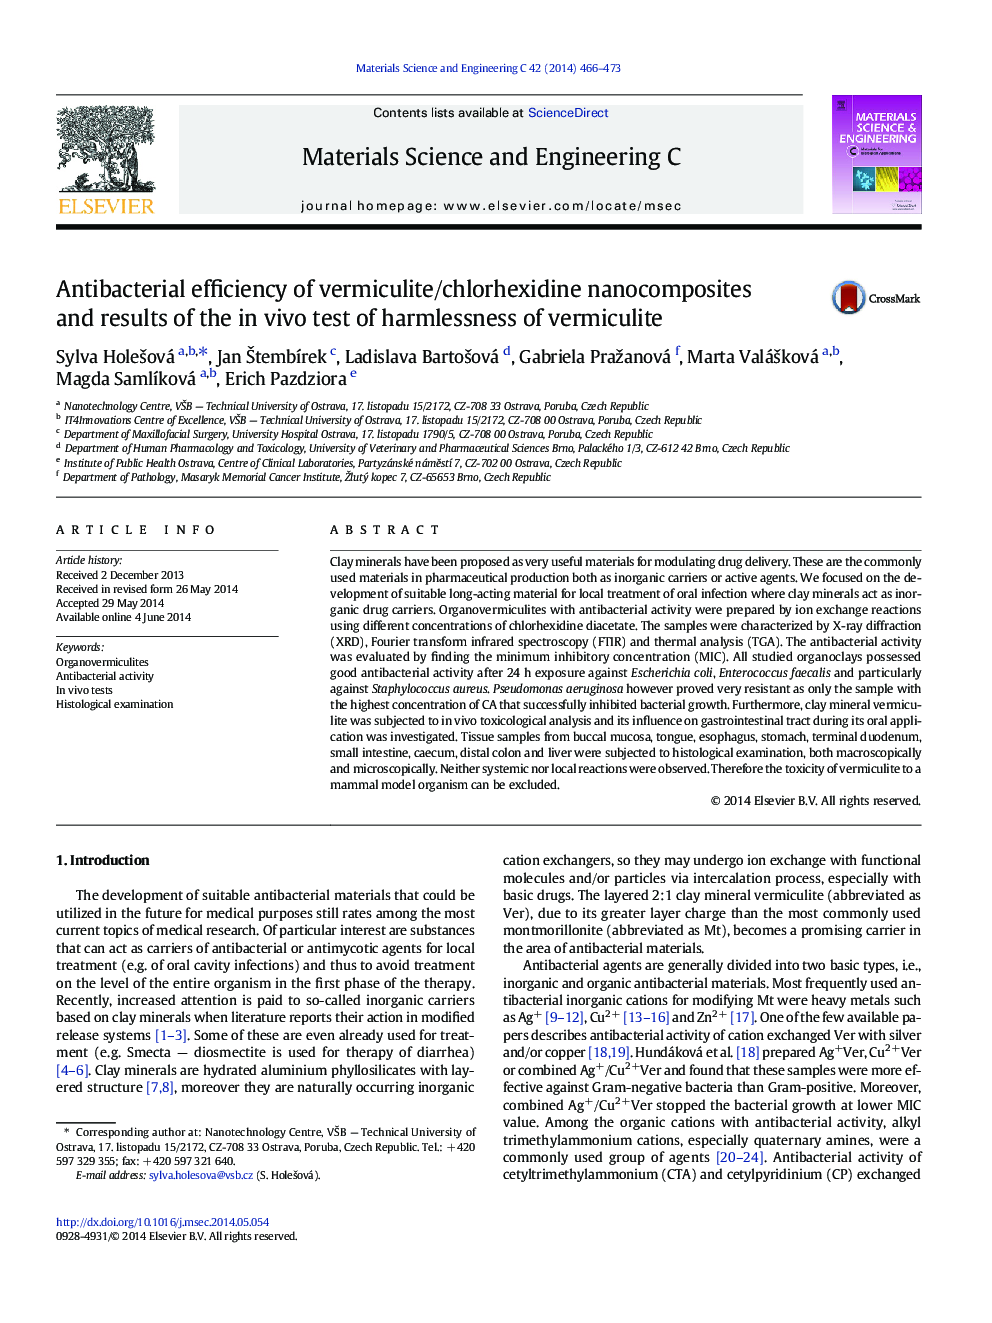 بازده آنتی باکتریال نانو کامپوزیتهای ورمیکولیت / کلرهگزیدین و نتایج آزمایش بیوشیمیایی ورمیکولیت 